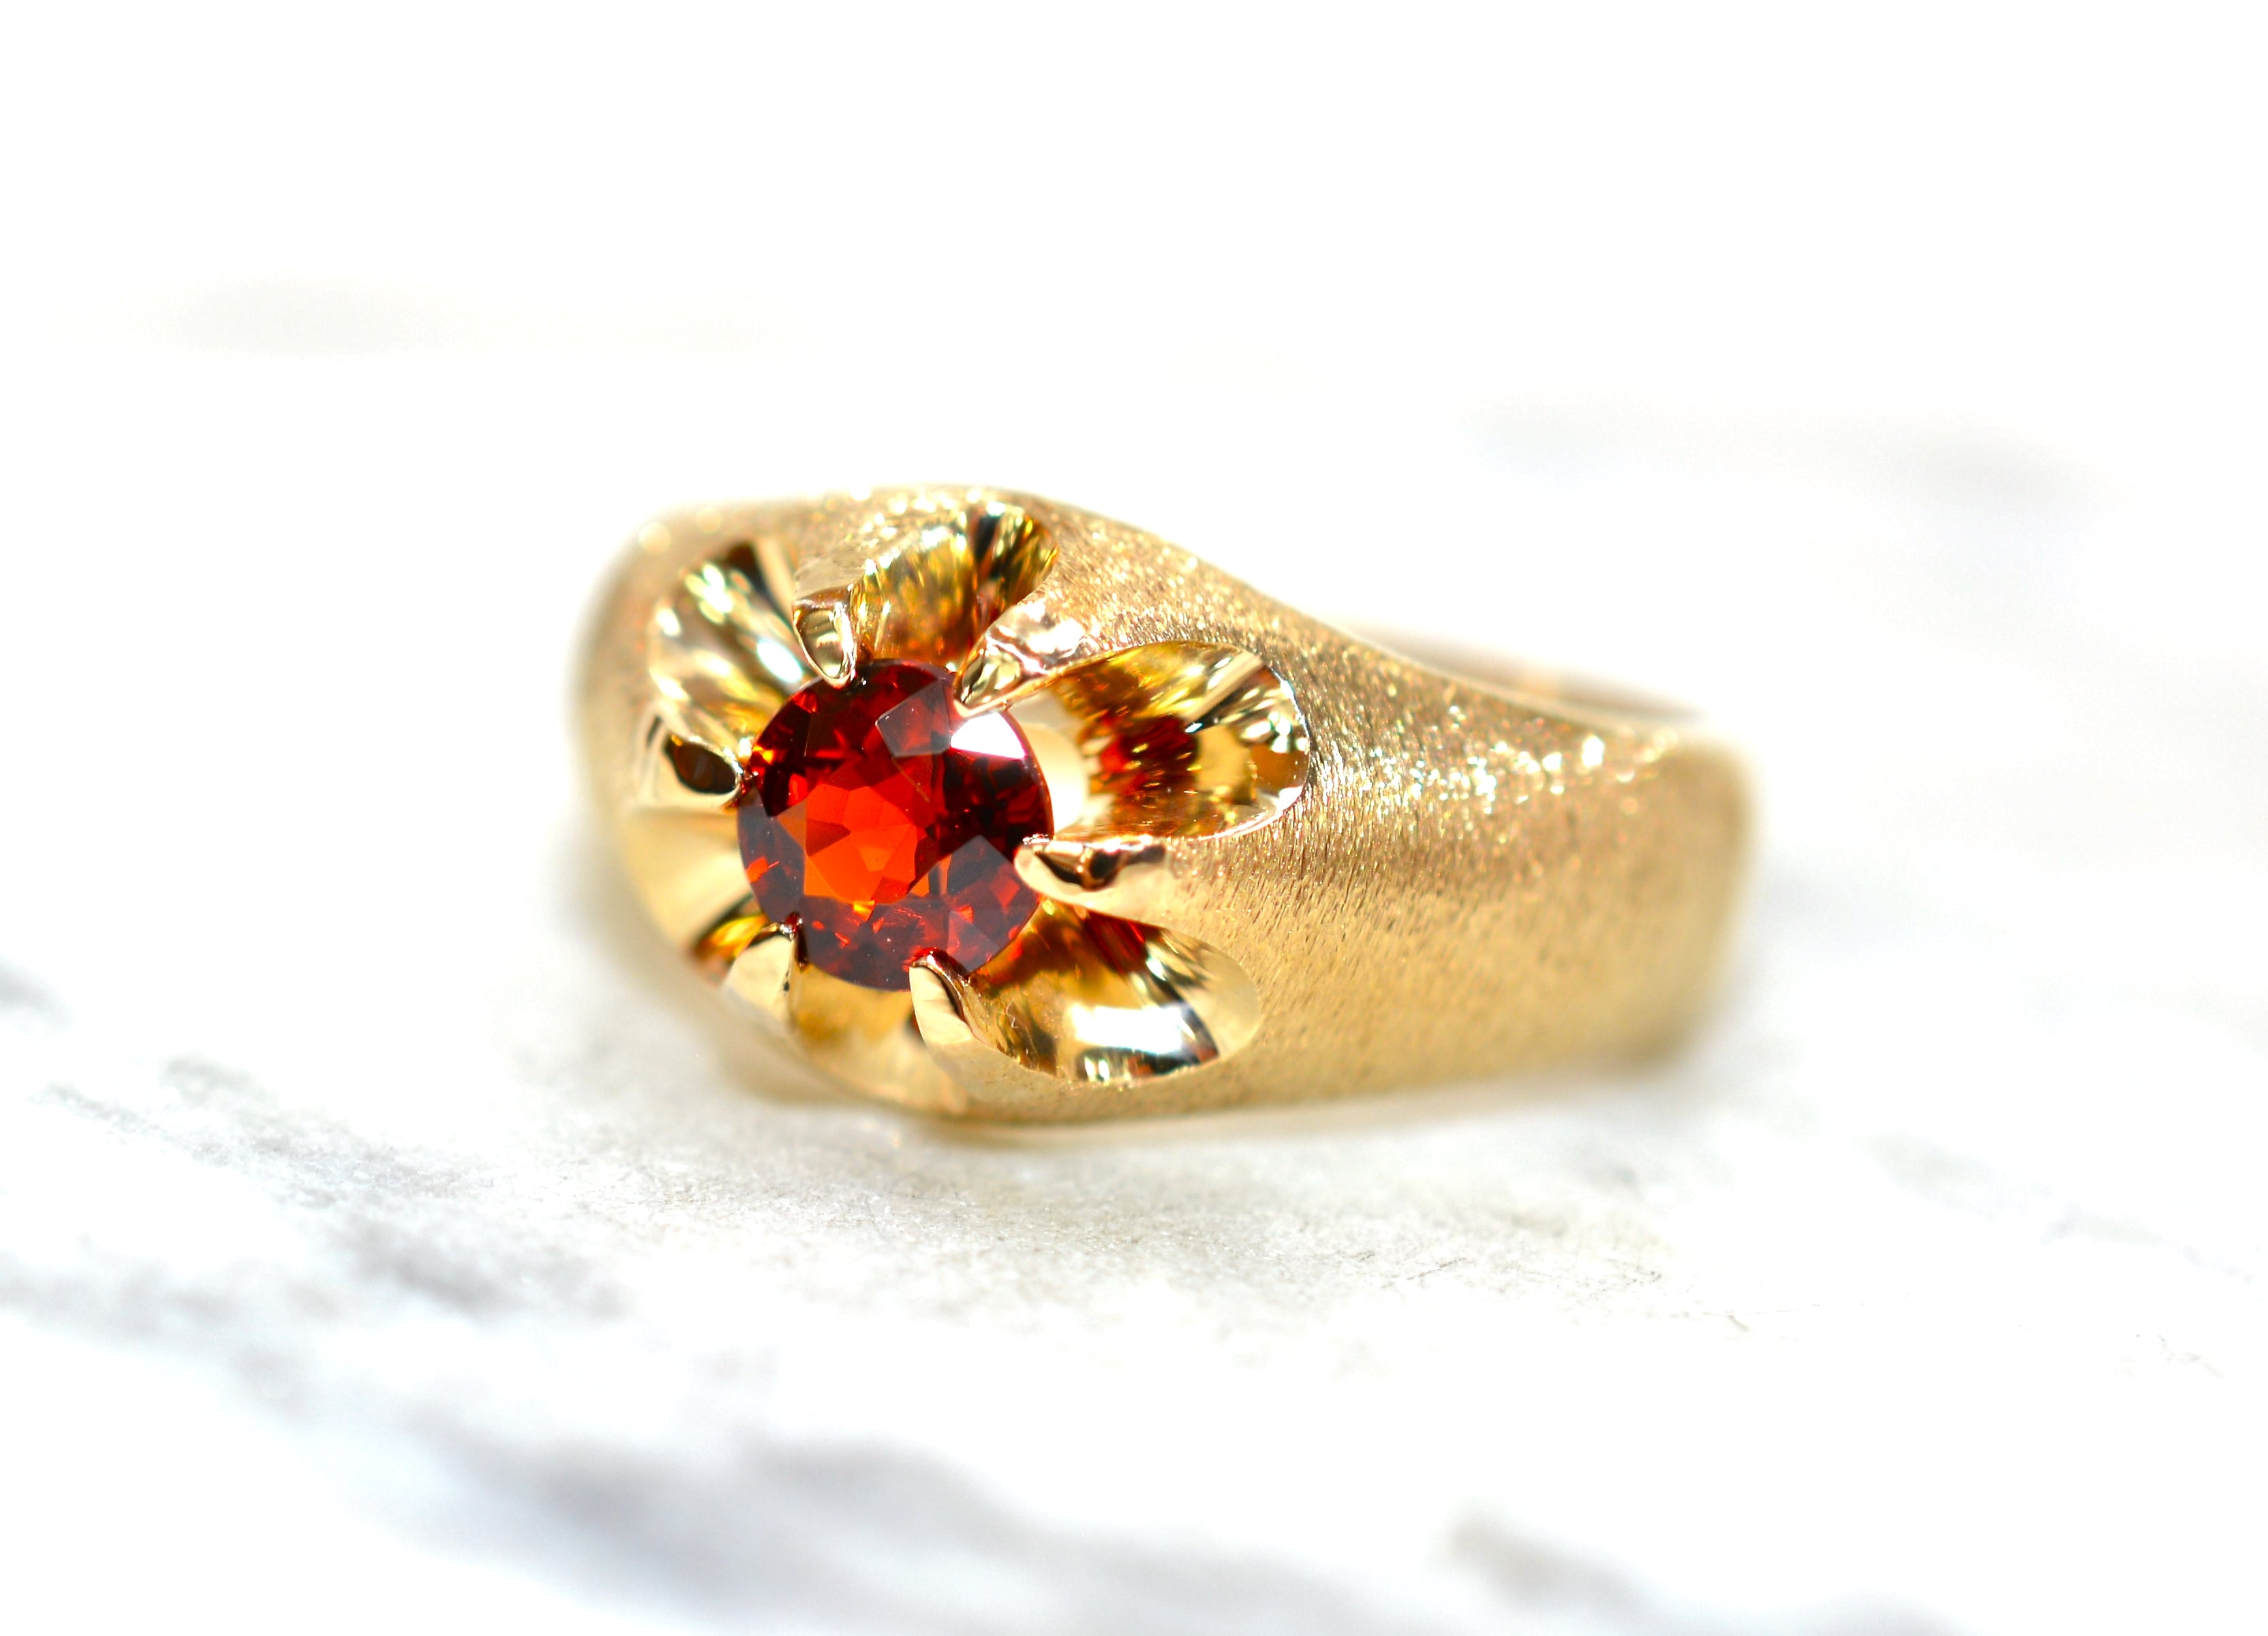 Natural Spessartine Mandarin Garnet Ring 10K Solid Gold .84ct Men's Ring Gemstone Ring Orange Ring Birthstone Ring Statement Ring Cocktail